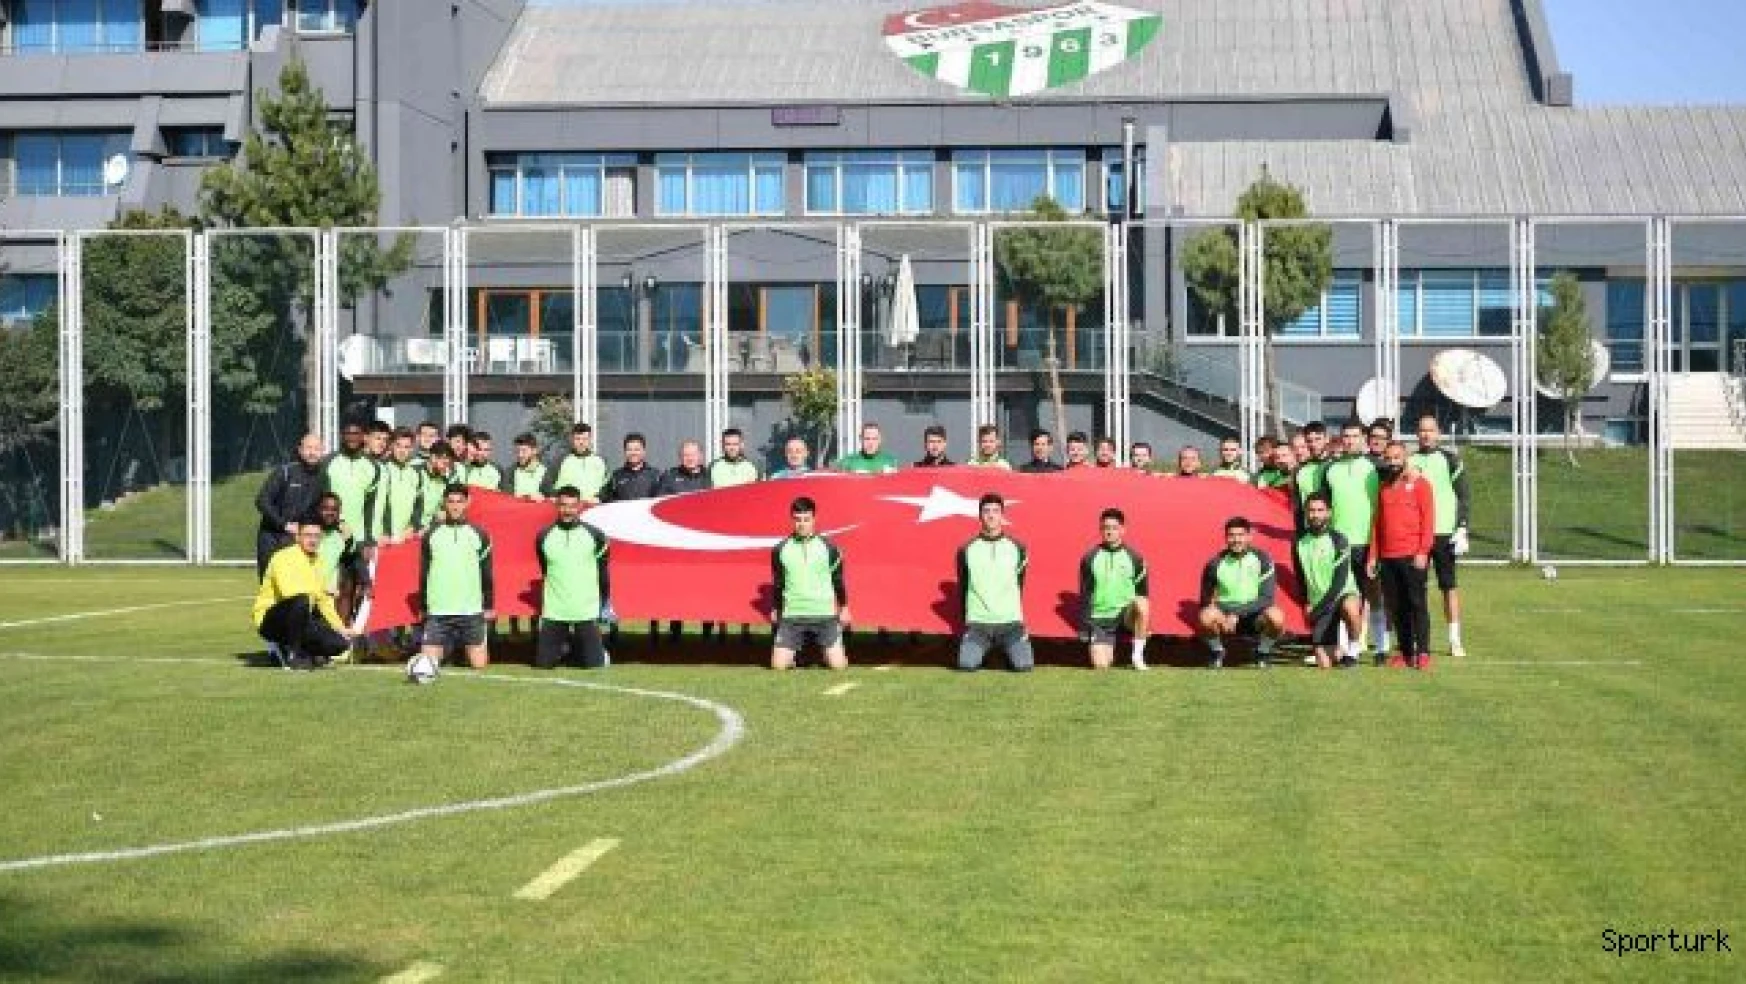 Bursaspor 3 eksik futbolcuyla çalışmalarına devam etti - 29 Ekim Cumhuriyet Bayramı kutlandı